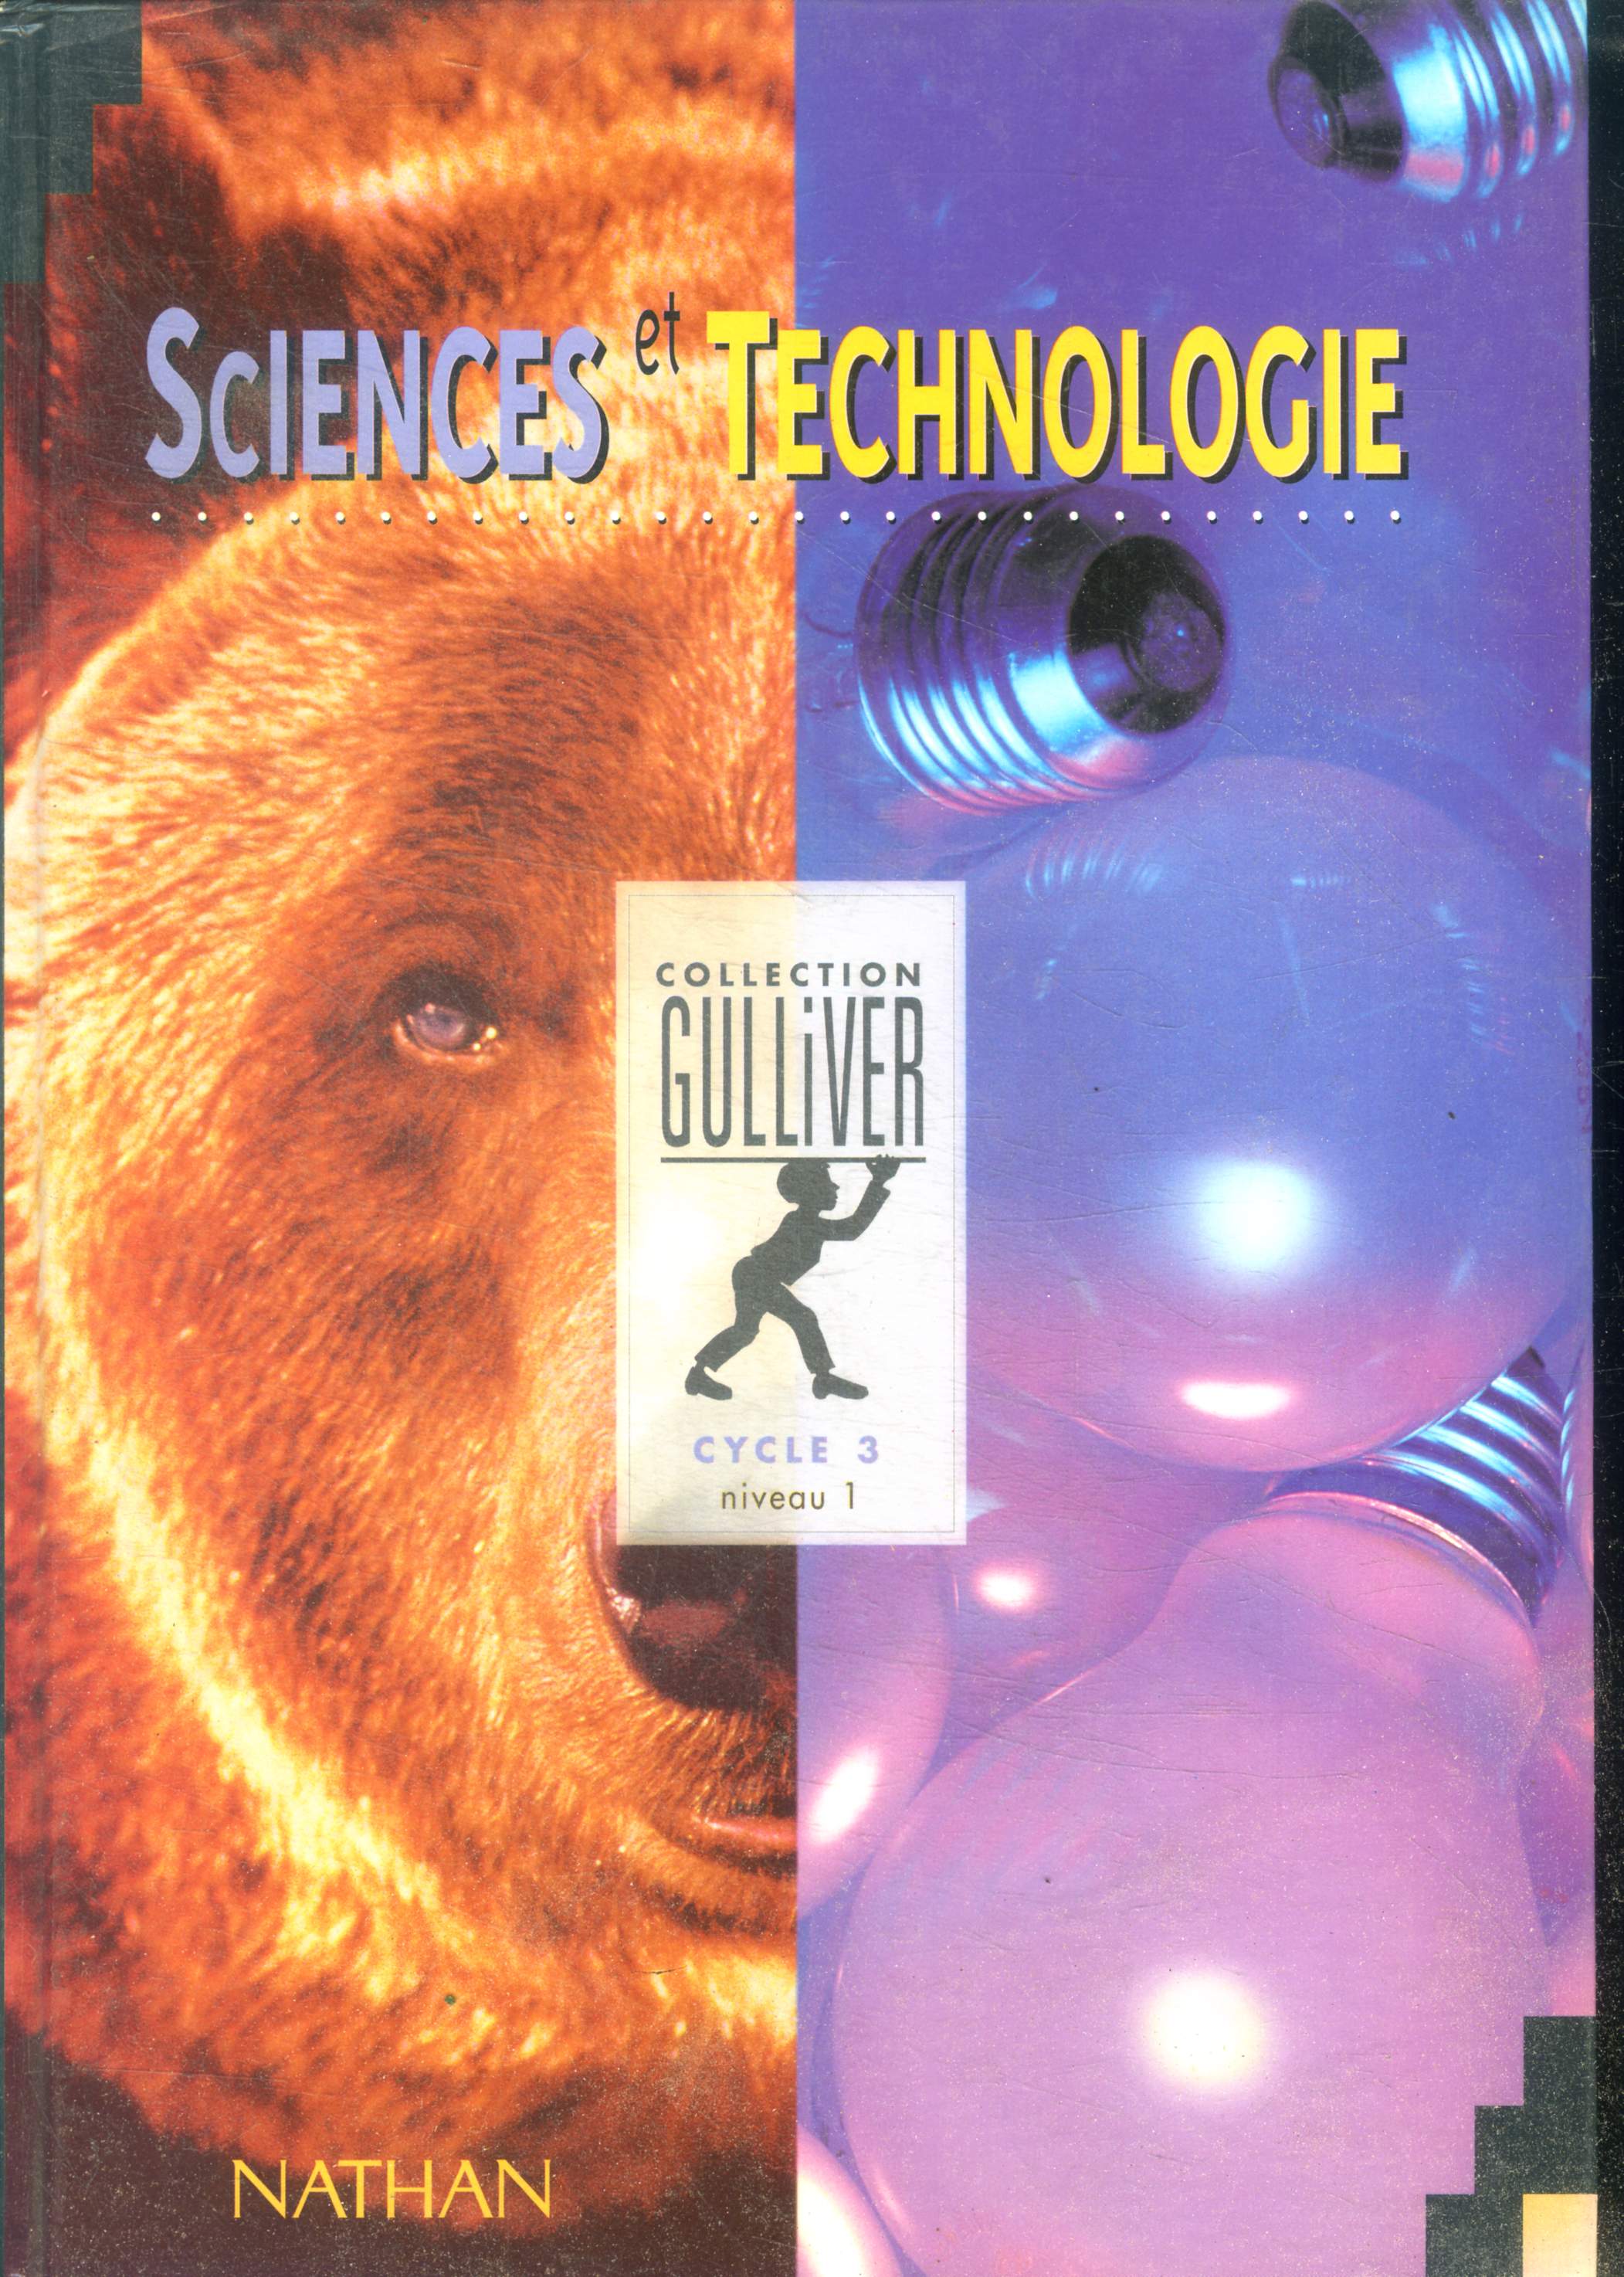 Sciences et technologie, cycle 3, niveau 1 - collection gulliver